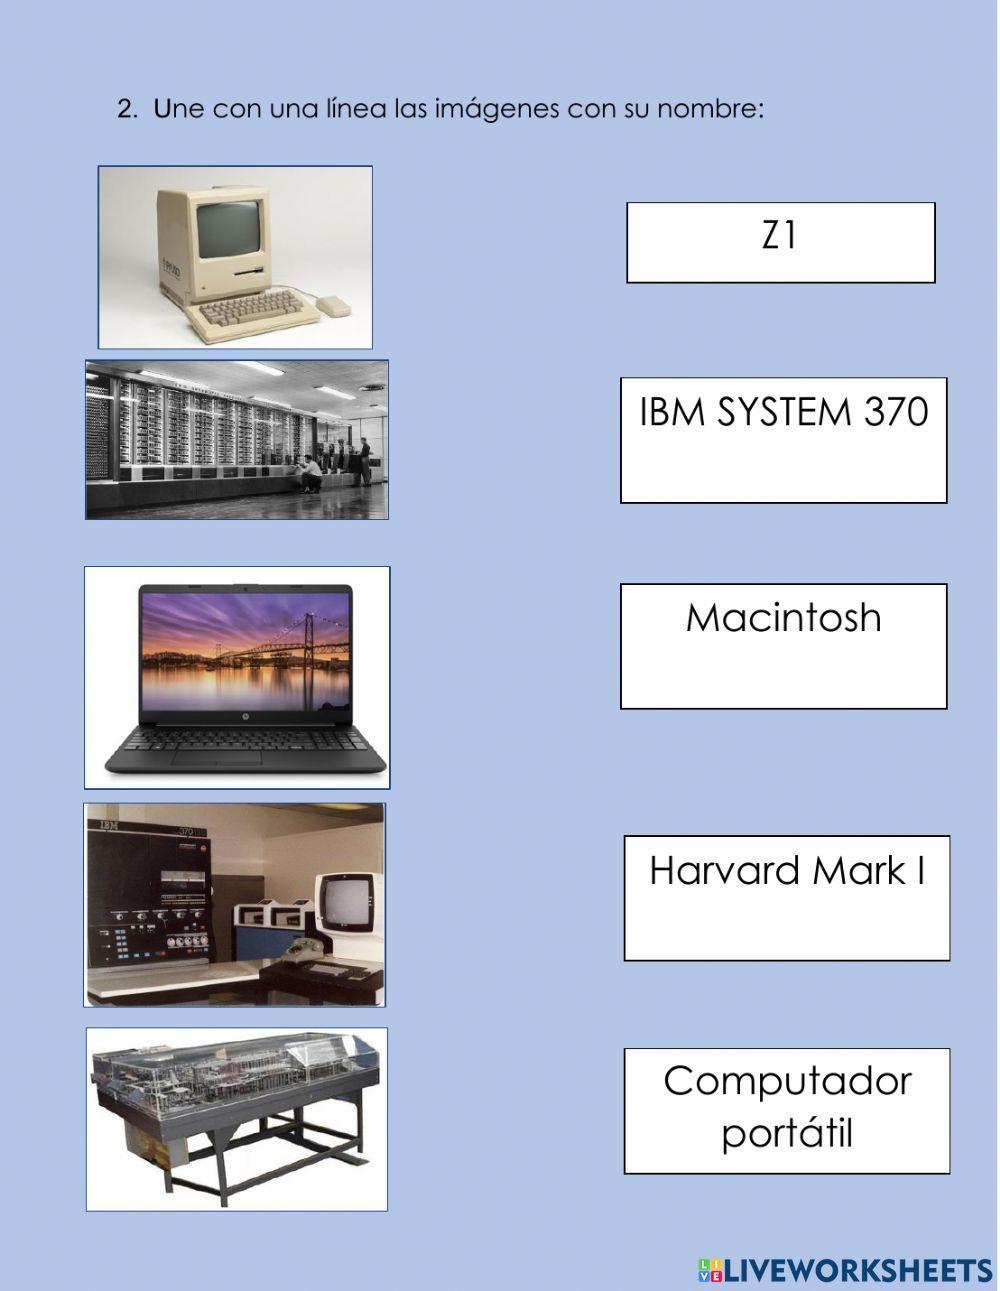 Historia de la computadora